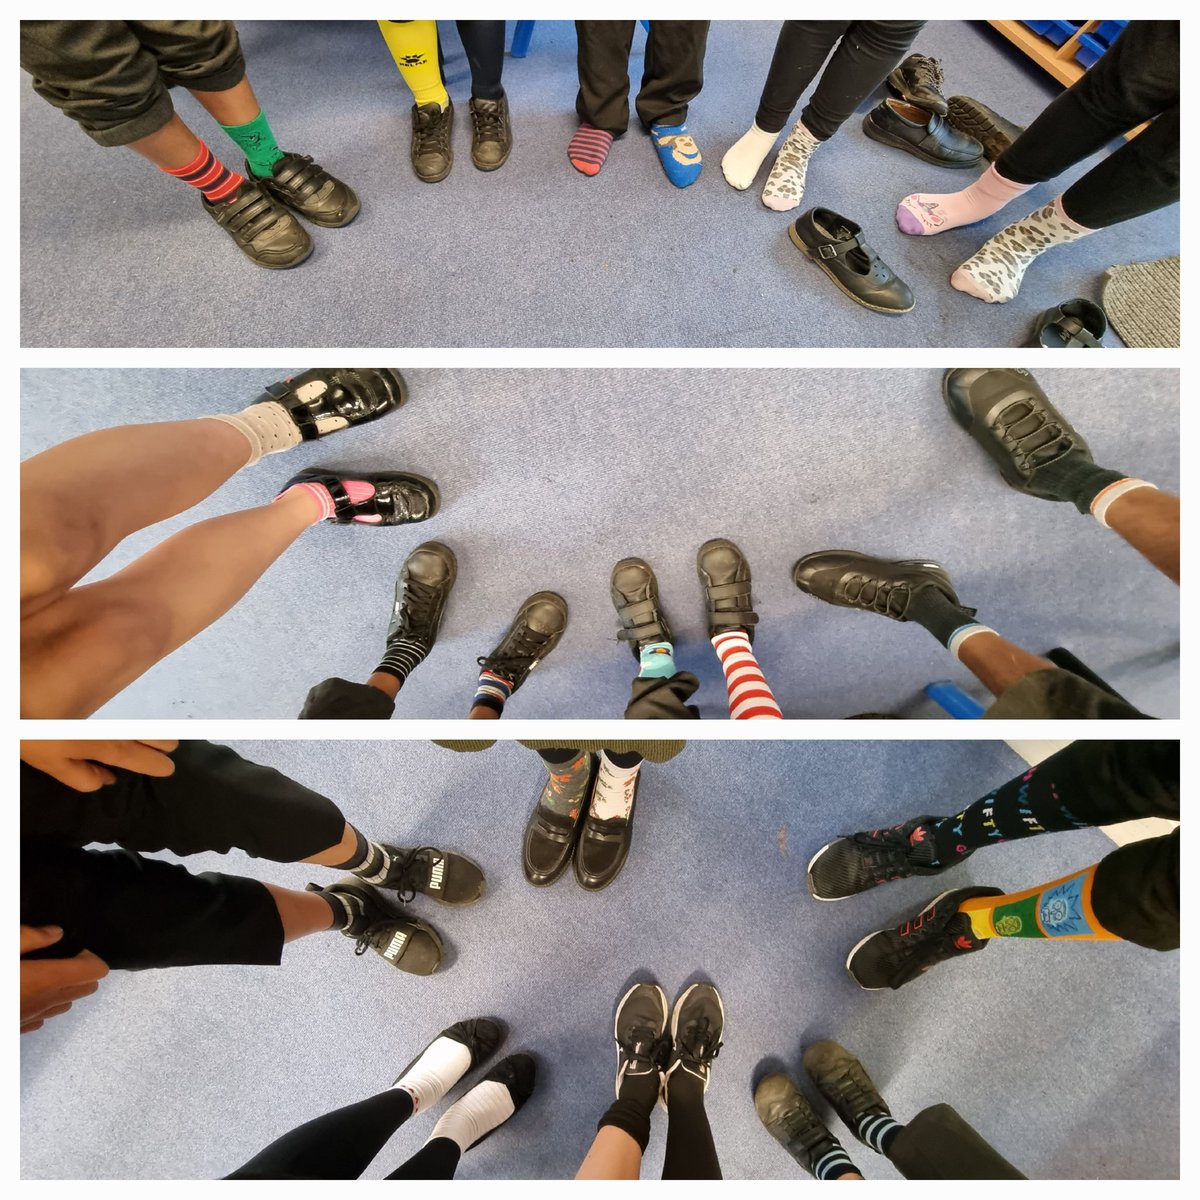 Odd socks in Oak class this morning to raise awareness for #antibullyingweek2022 🧦 @CherryTreePST @headcherrytree